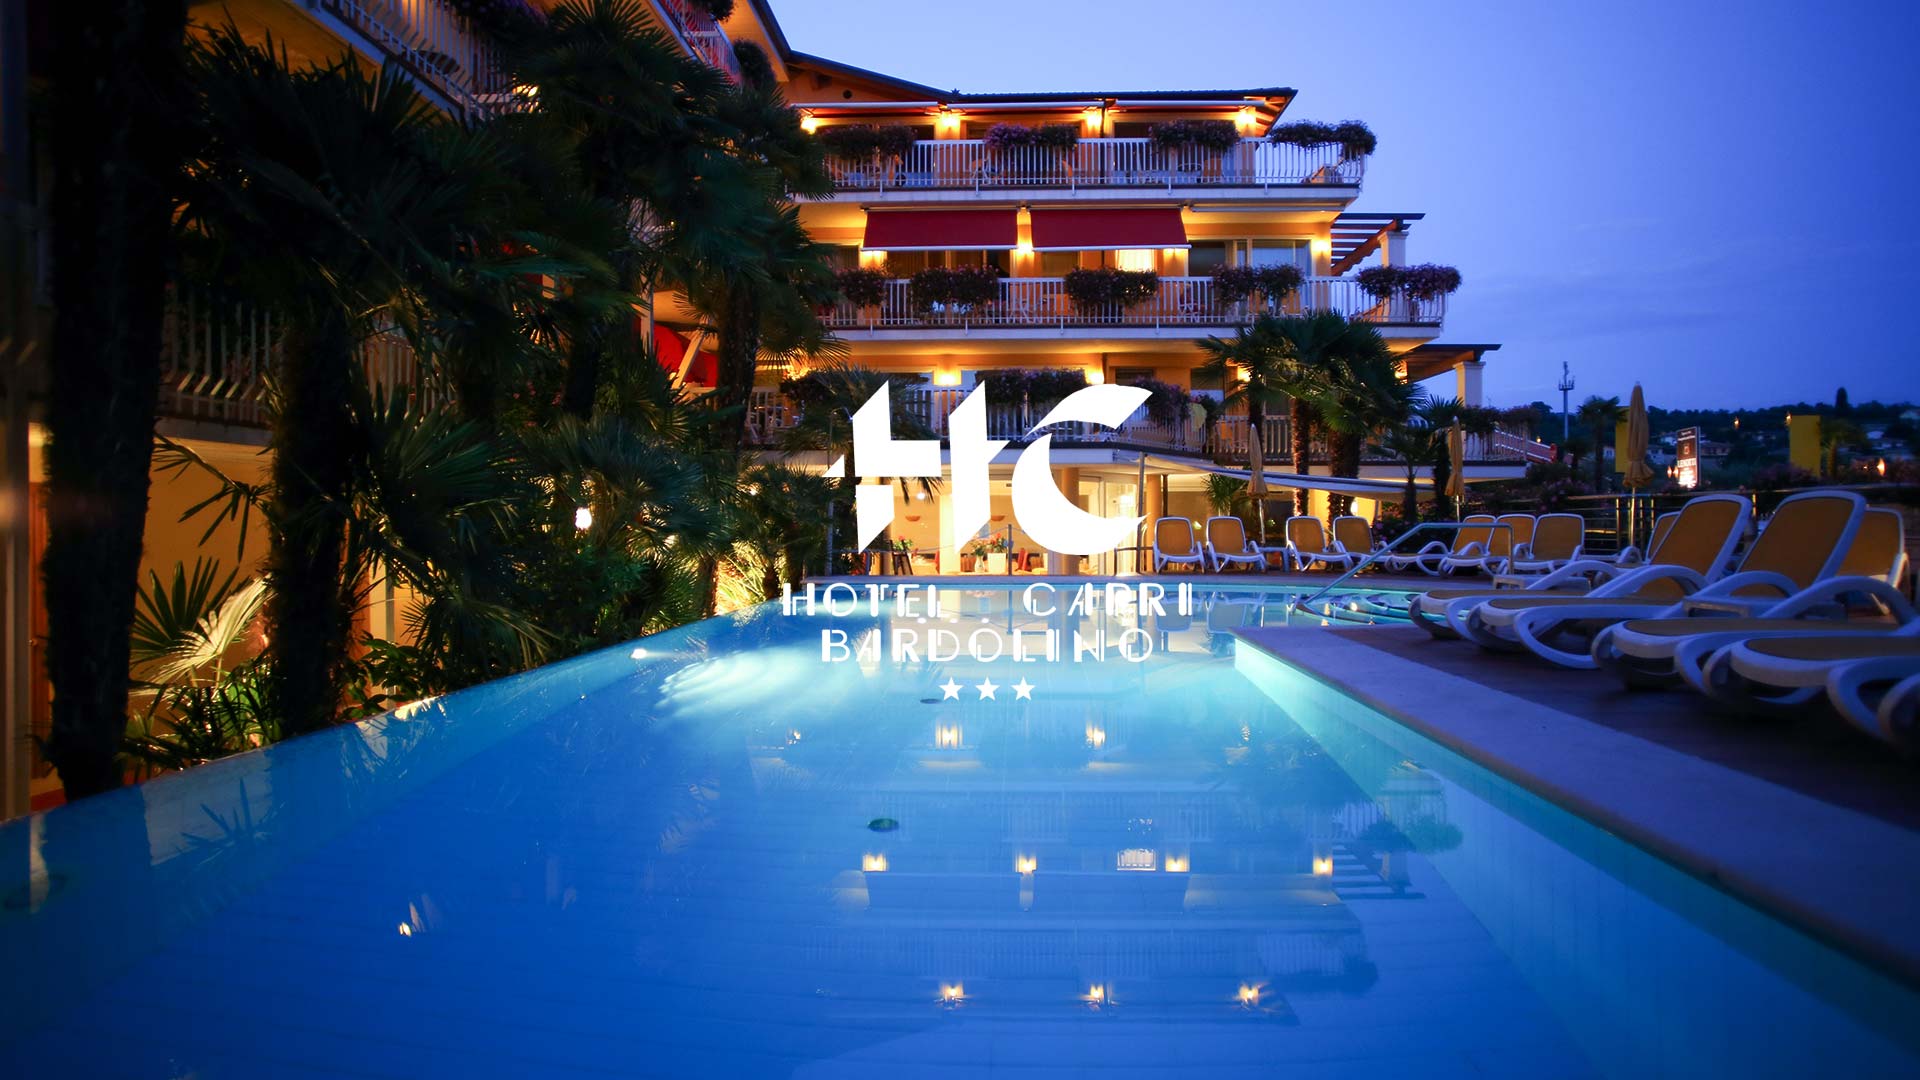 (c) Hotel-capri.com